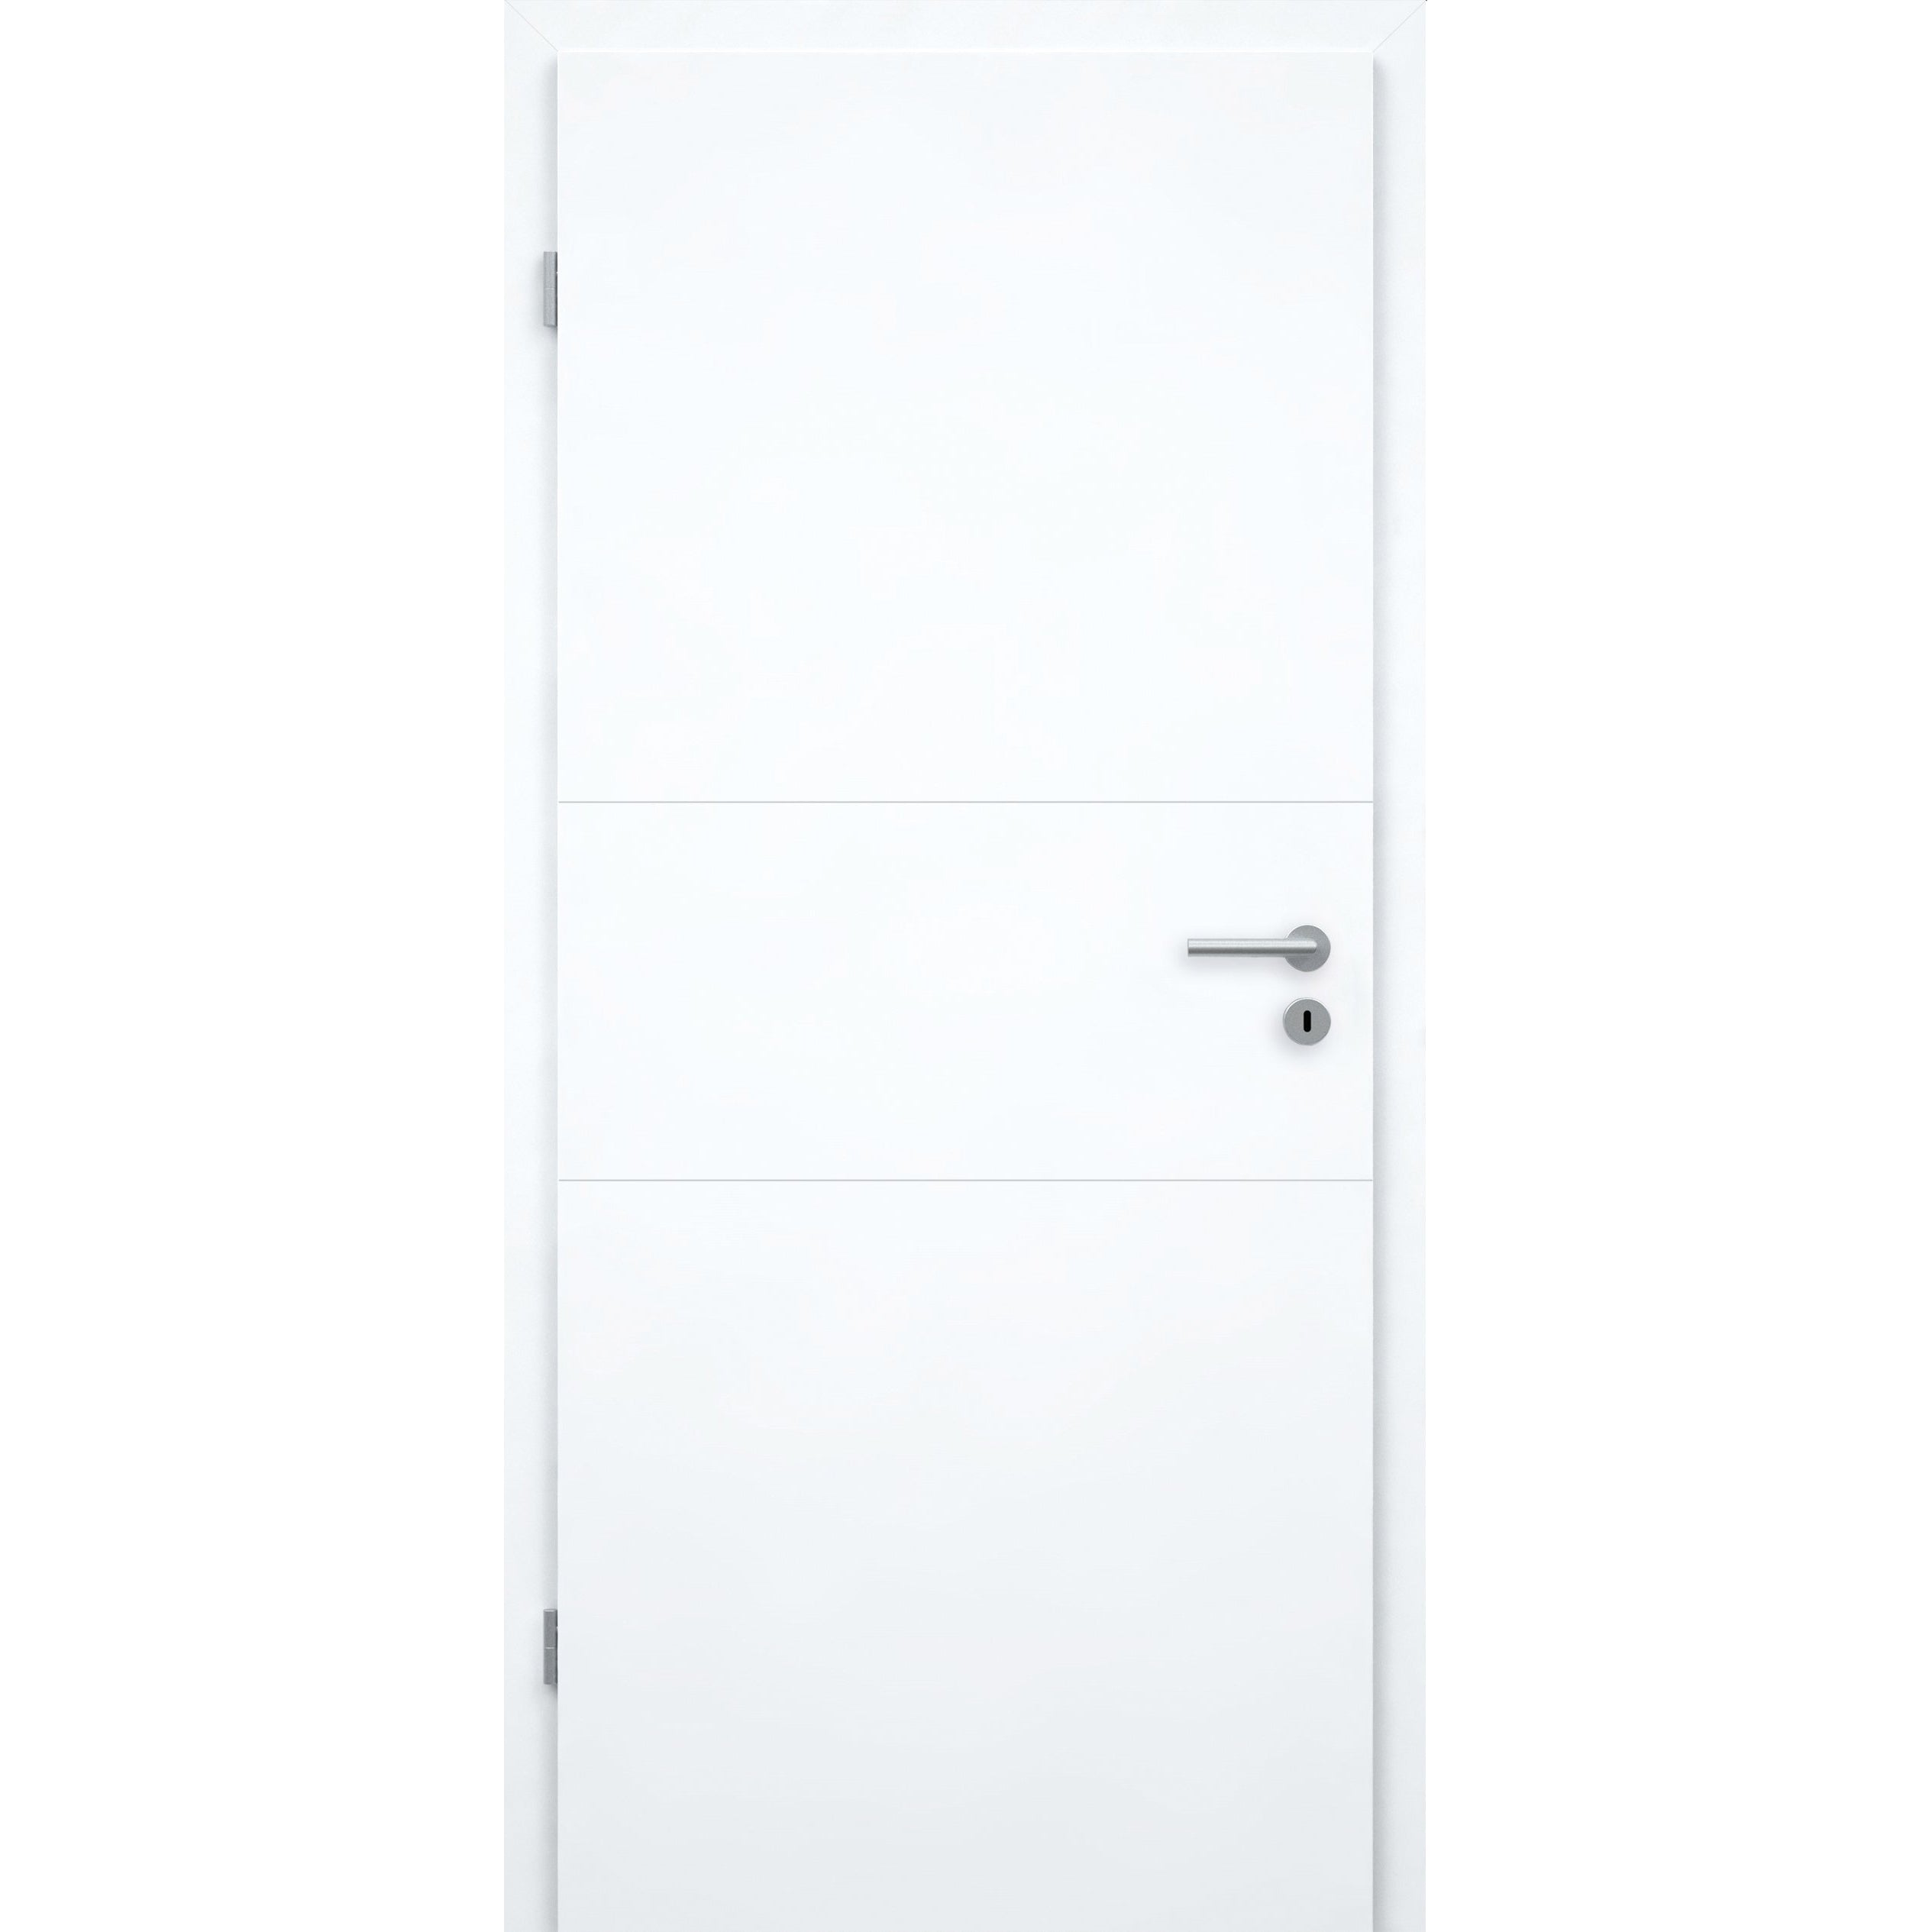 Wohnungseingangstür brillant-weiß 2 Rillen quer Designkante SK1 / KK3 - Modell Designtür Q23